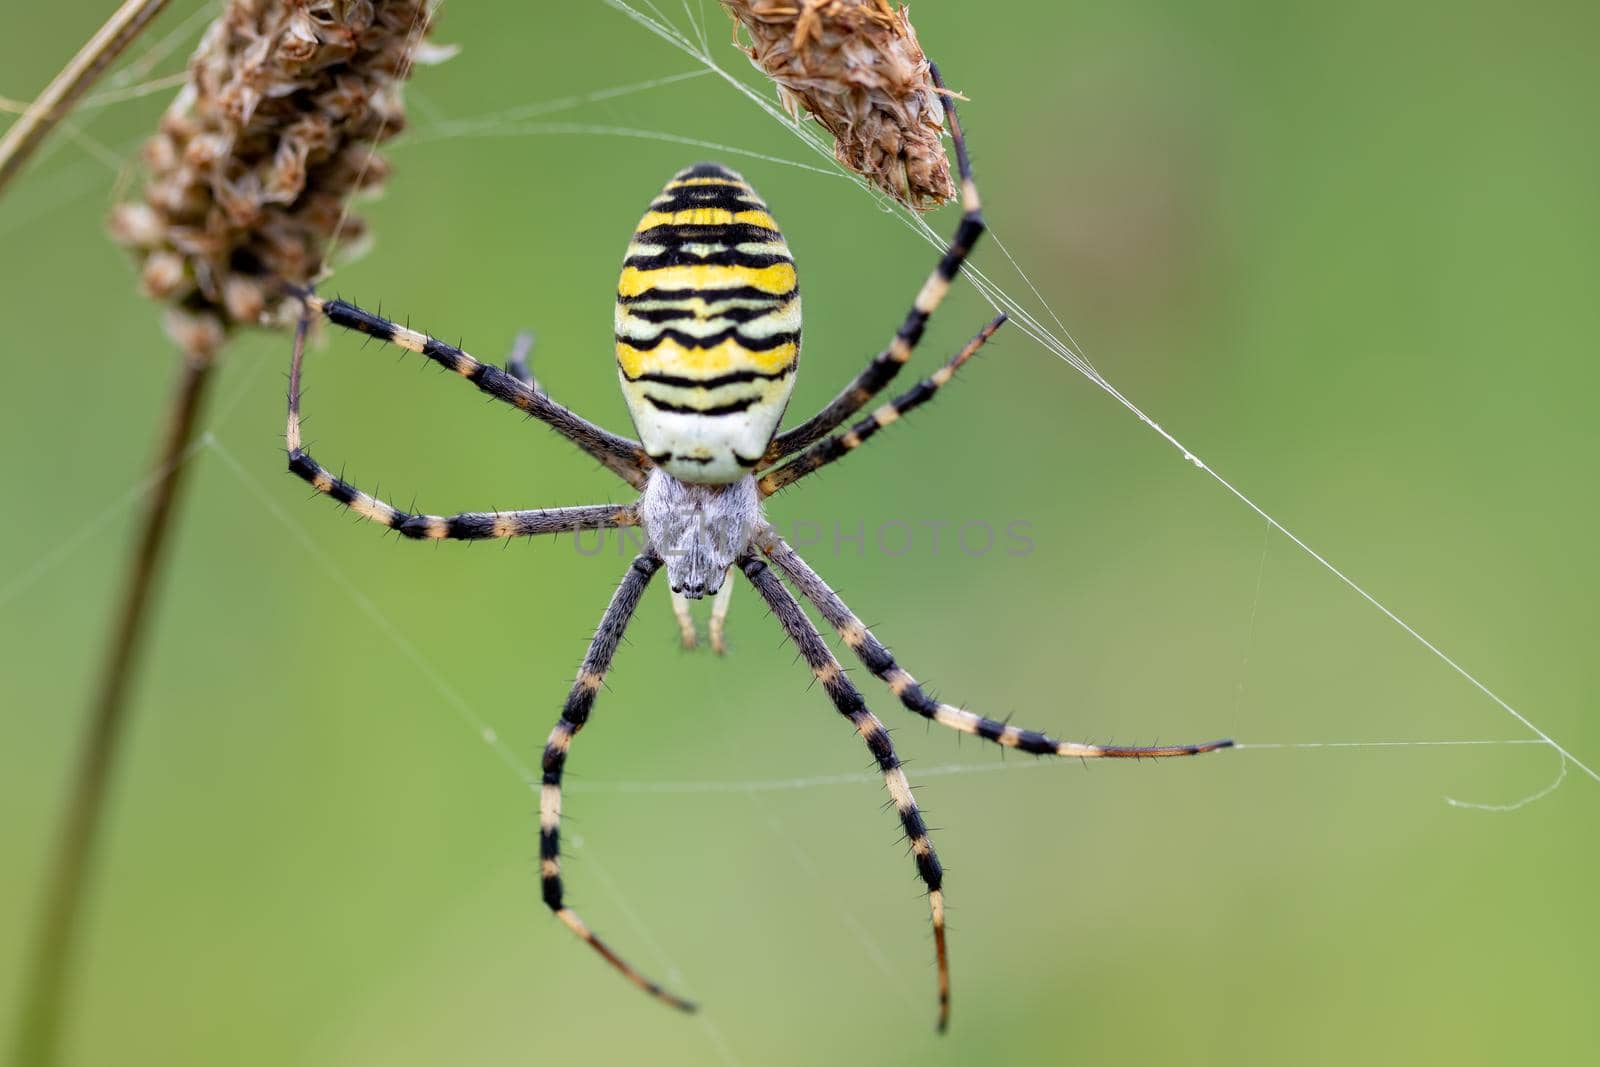 Argiope bruennichi (wasp spider) on web by artush